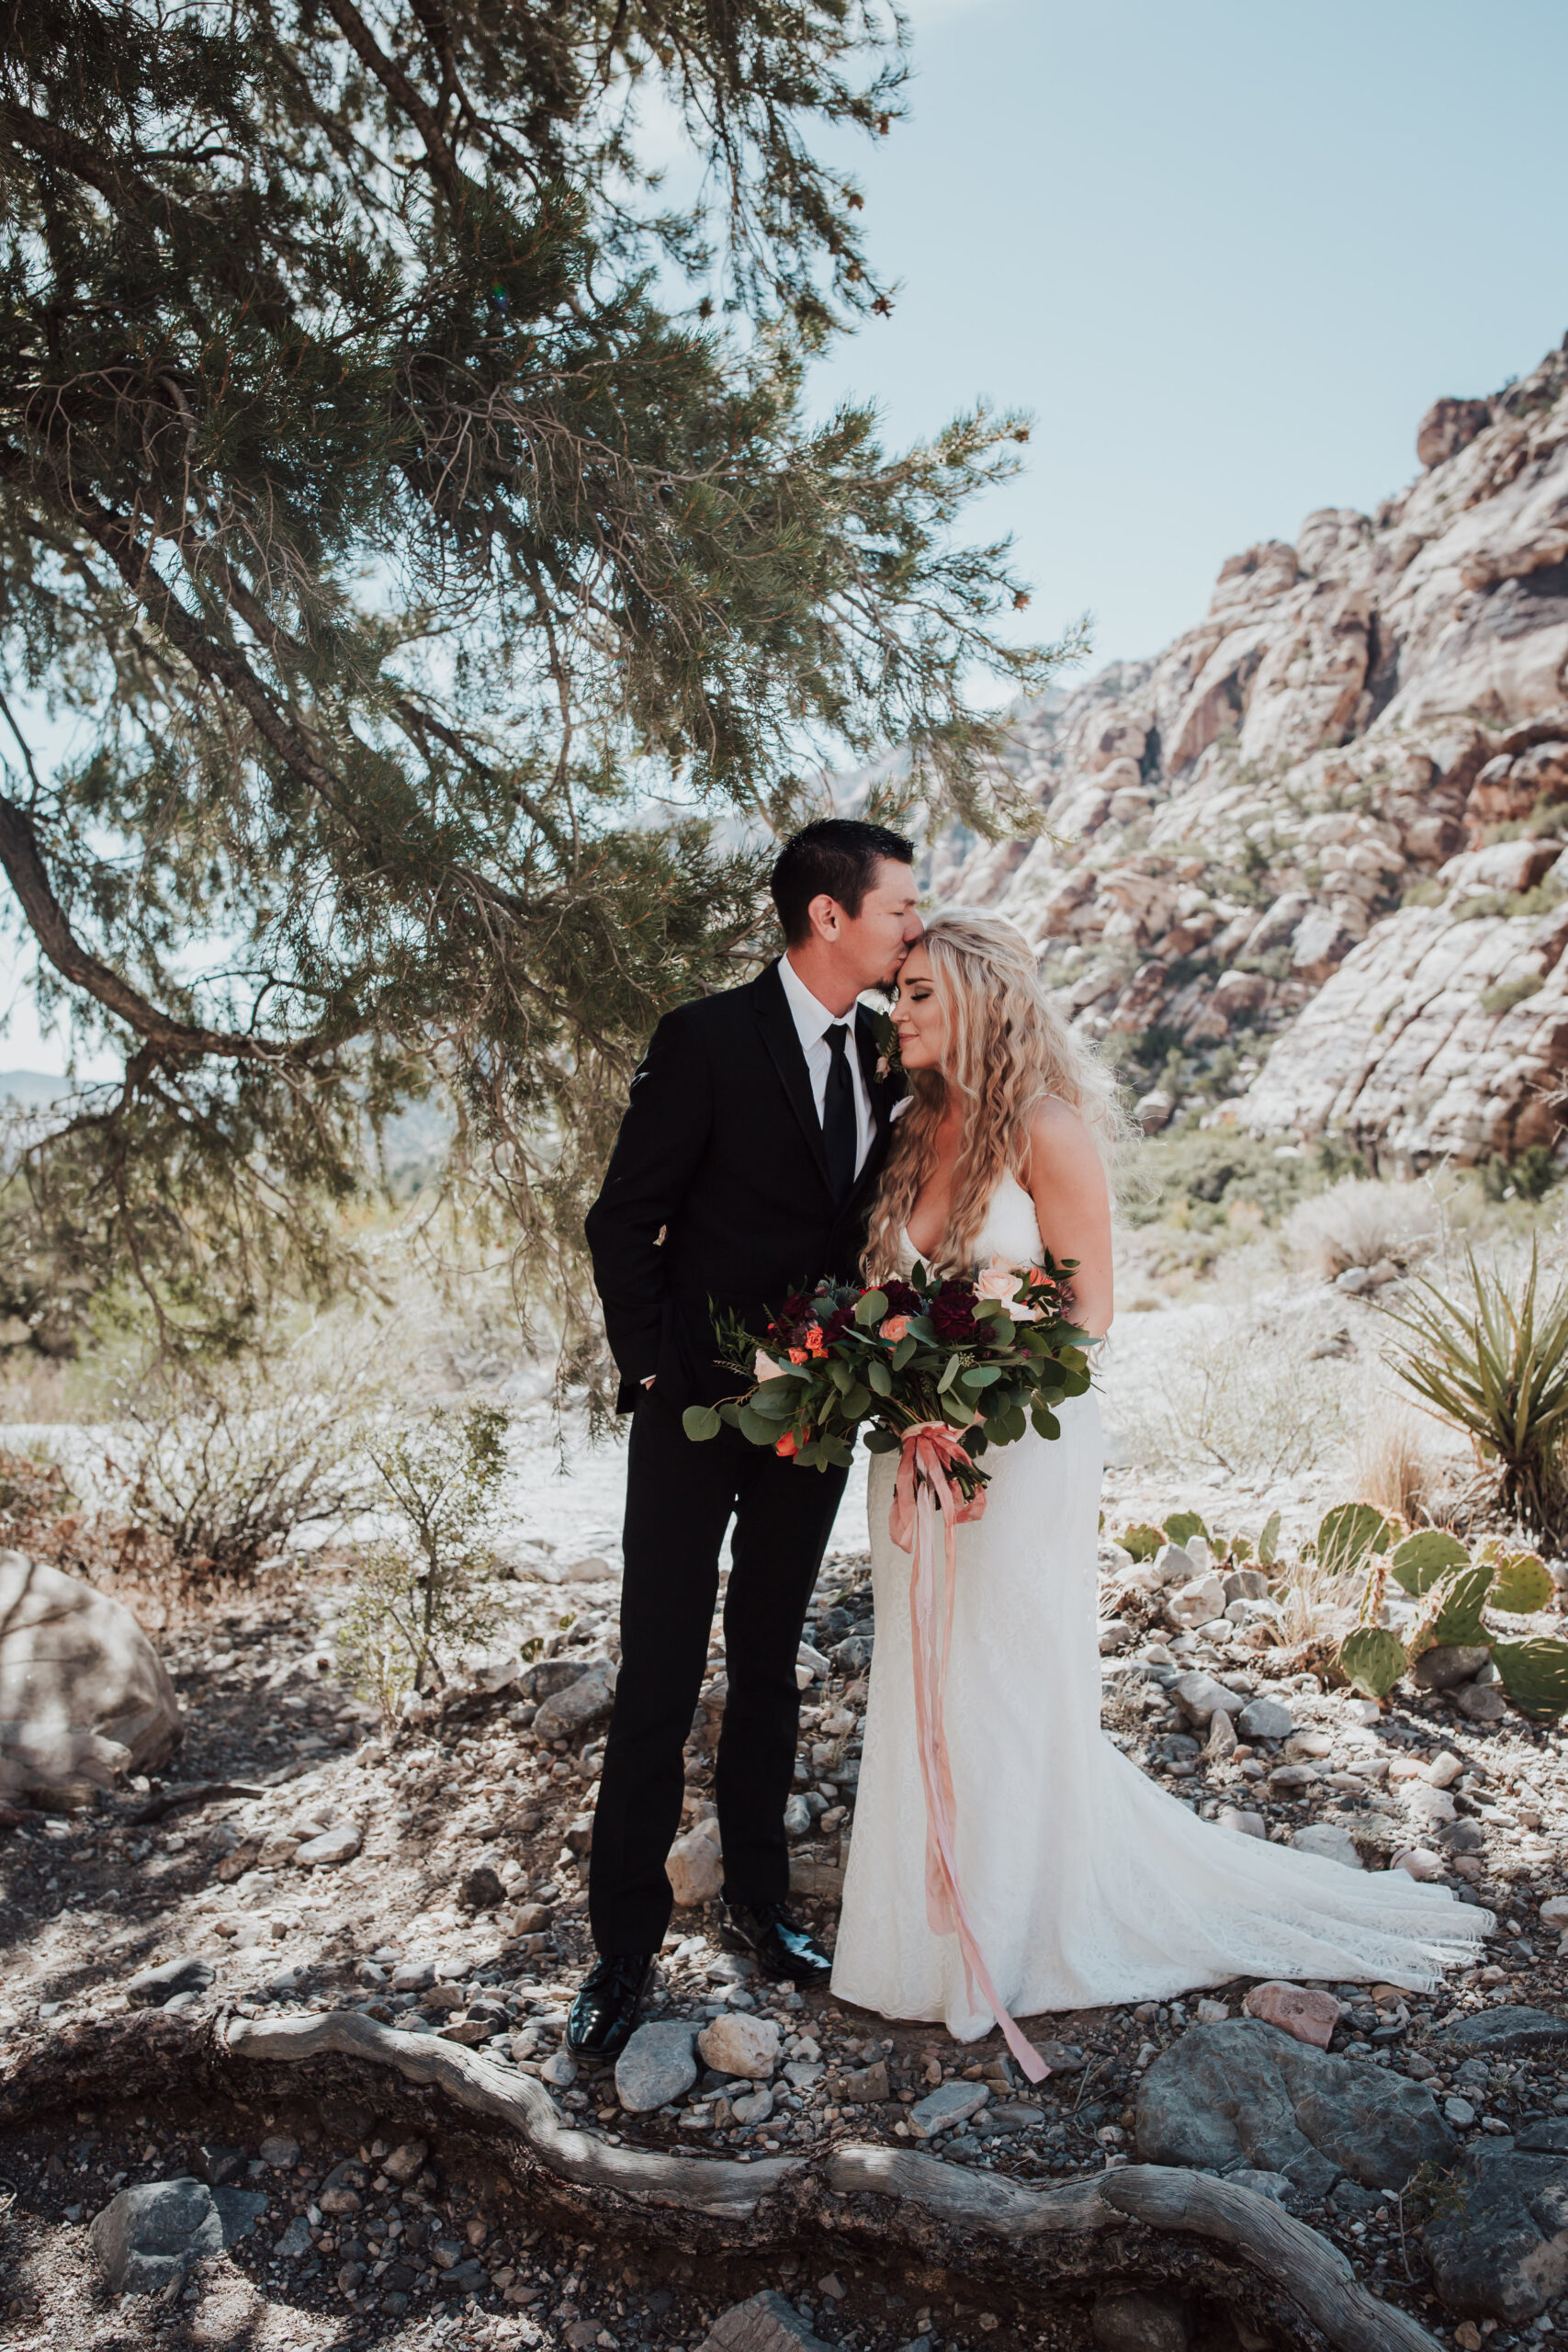 Rustic Bloom Photography | Bride + Groom Desert Elopement